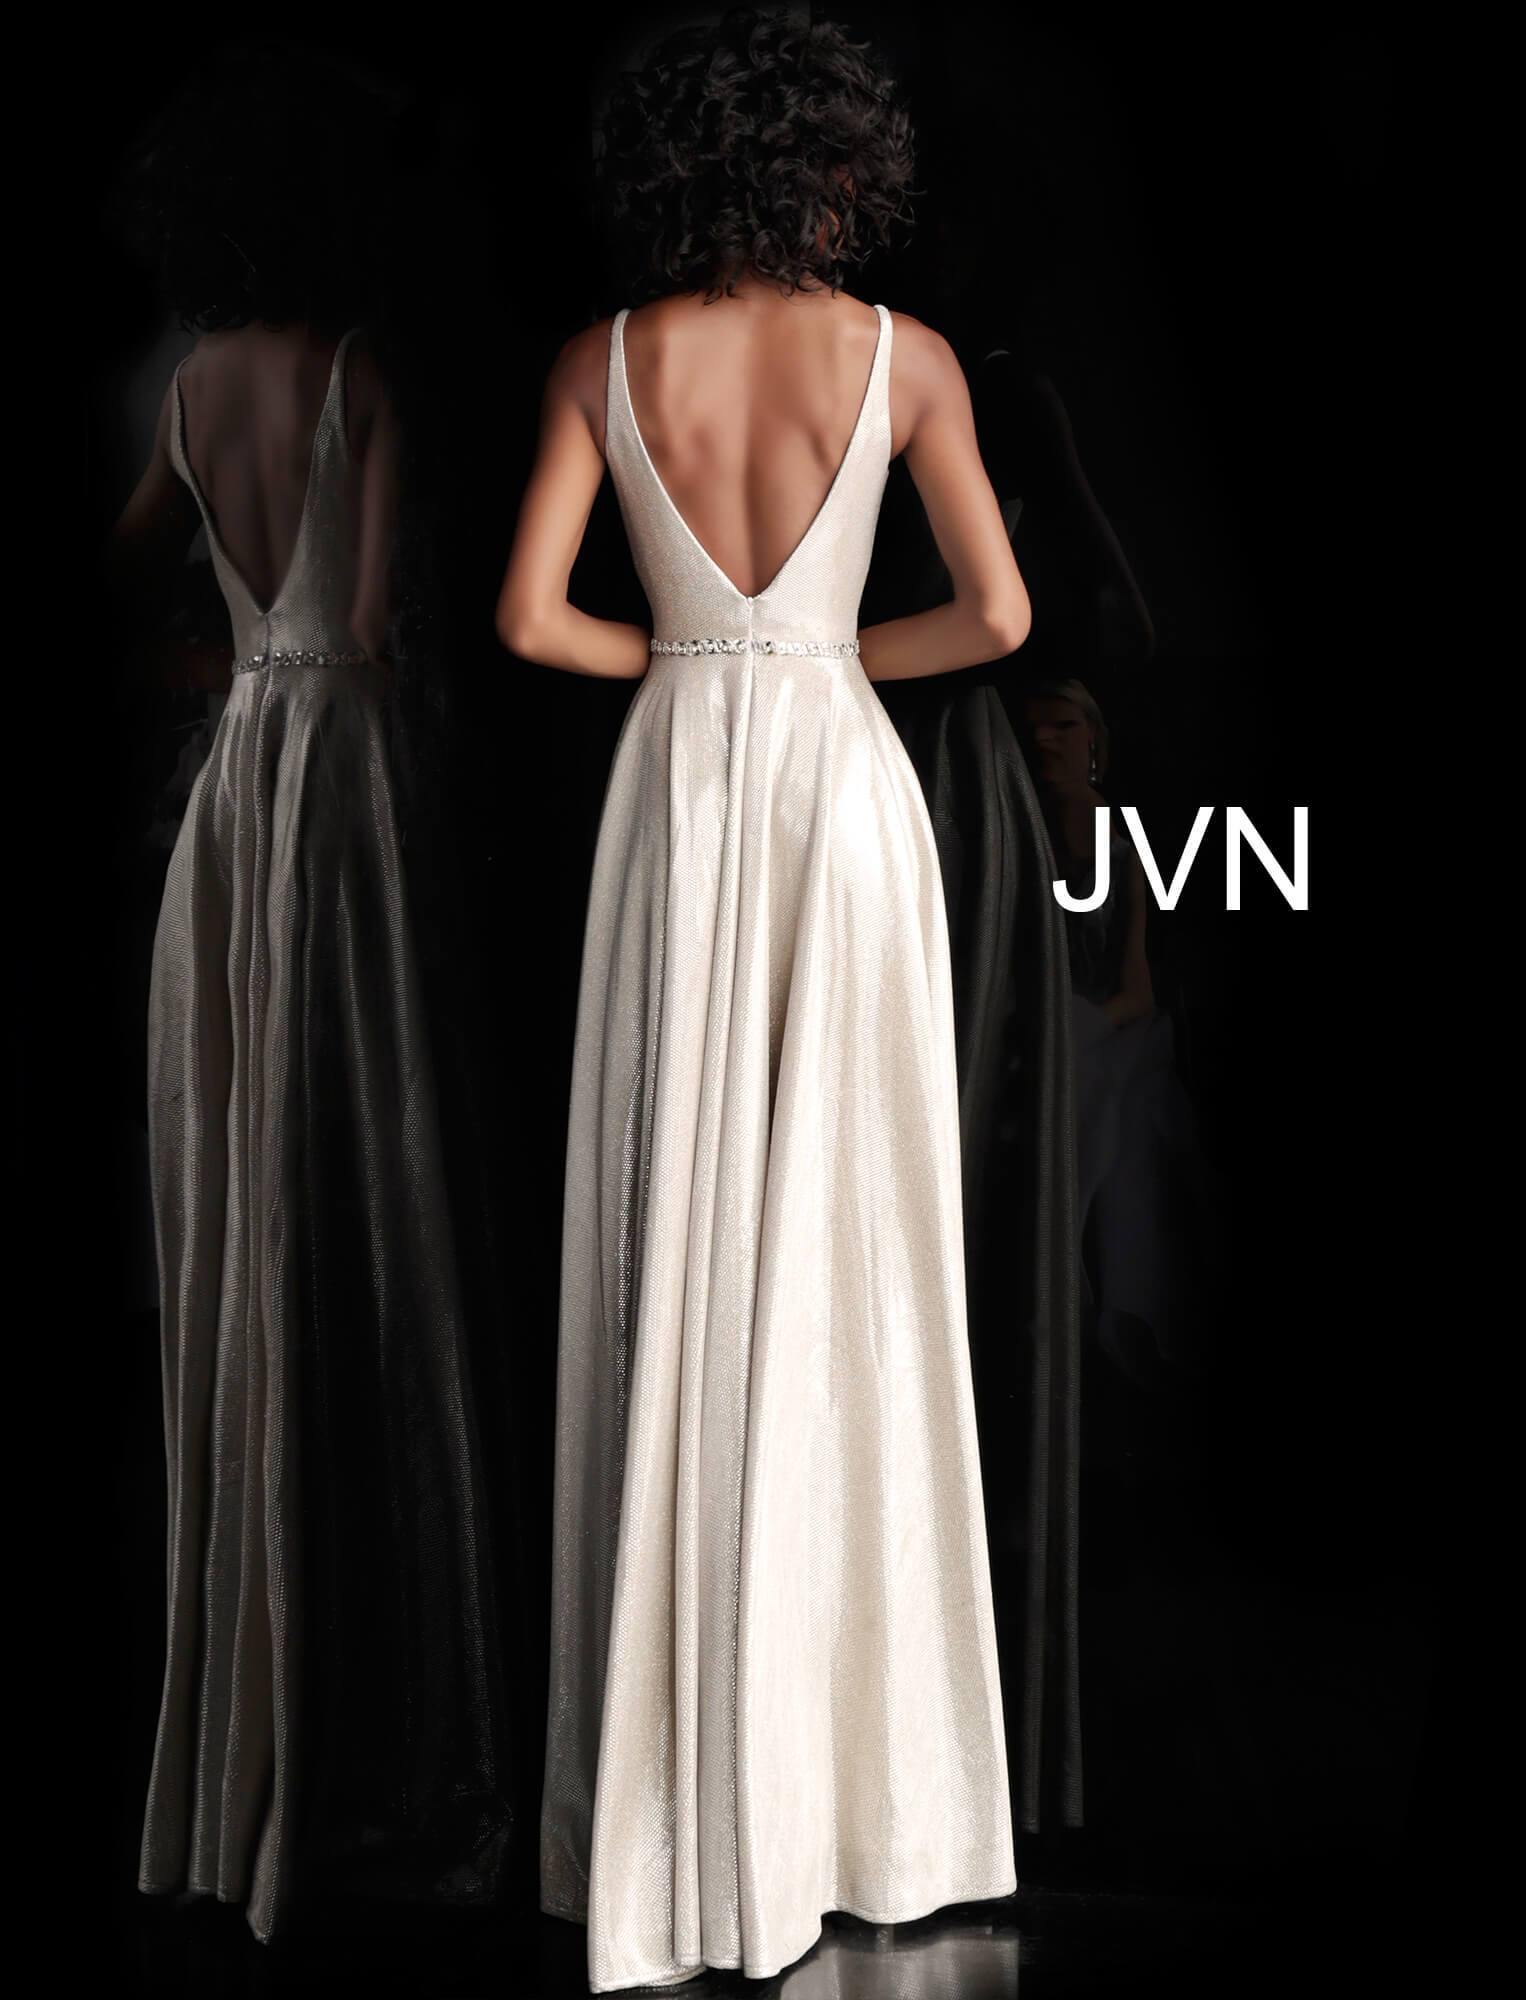 JVN By Jovani Long Formal Evening Prom Dress JVN67050 - The Dress Outlet Jovani